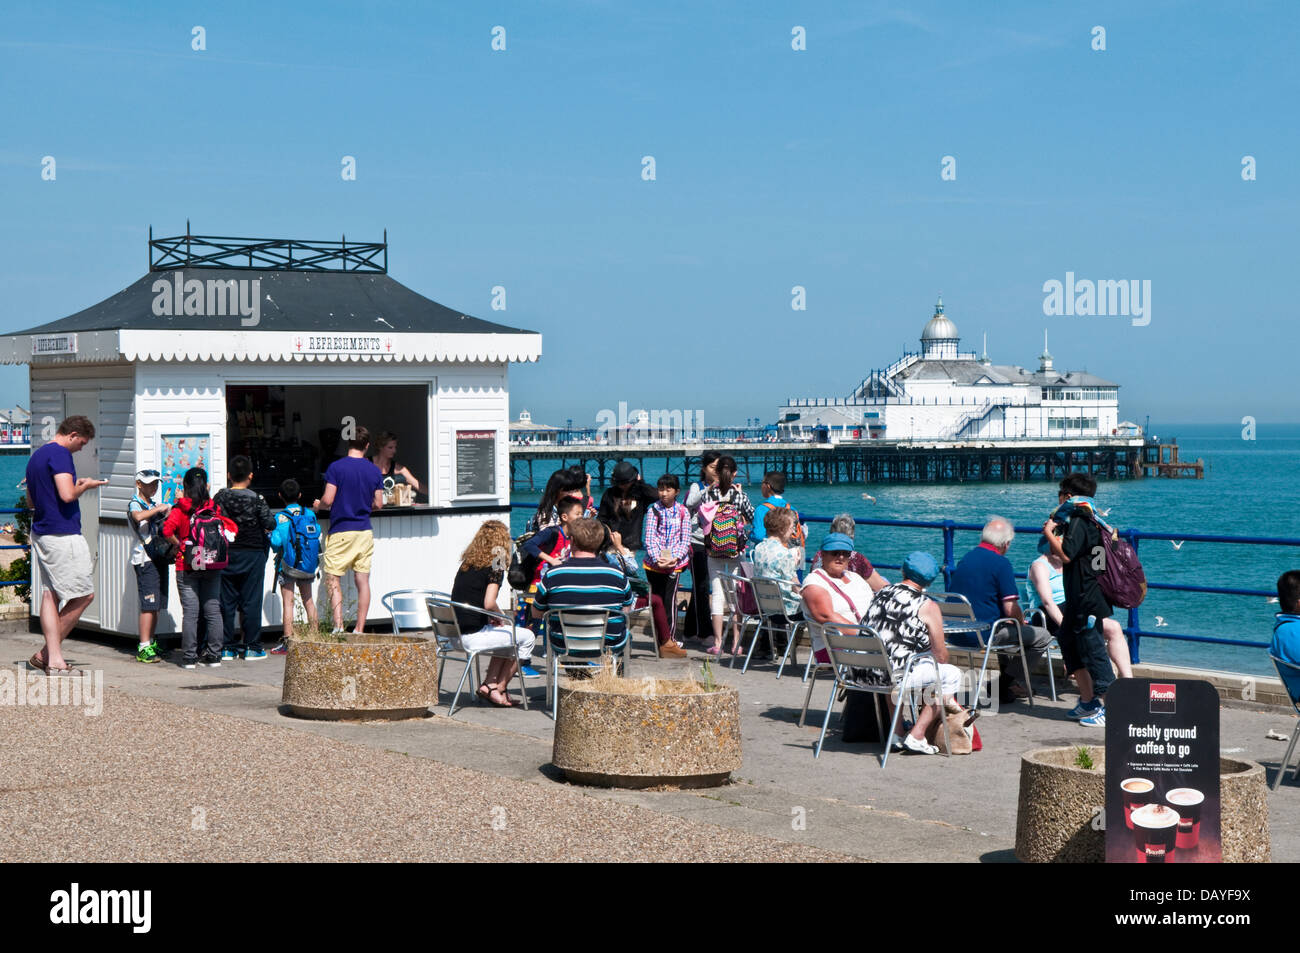 Touristen an einem Kiosk Erfrischung auf der Promenade von Eastbourne mit dem Pier im Hintergrund Stockfoto